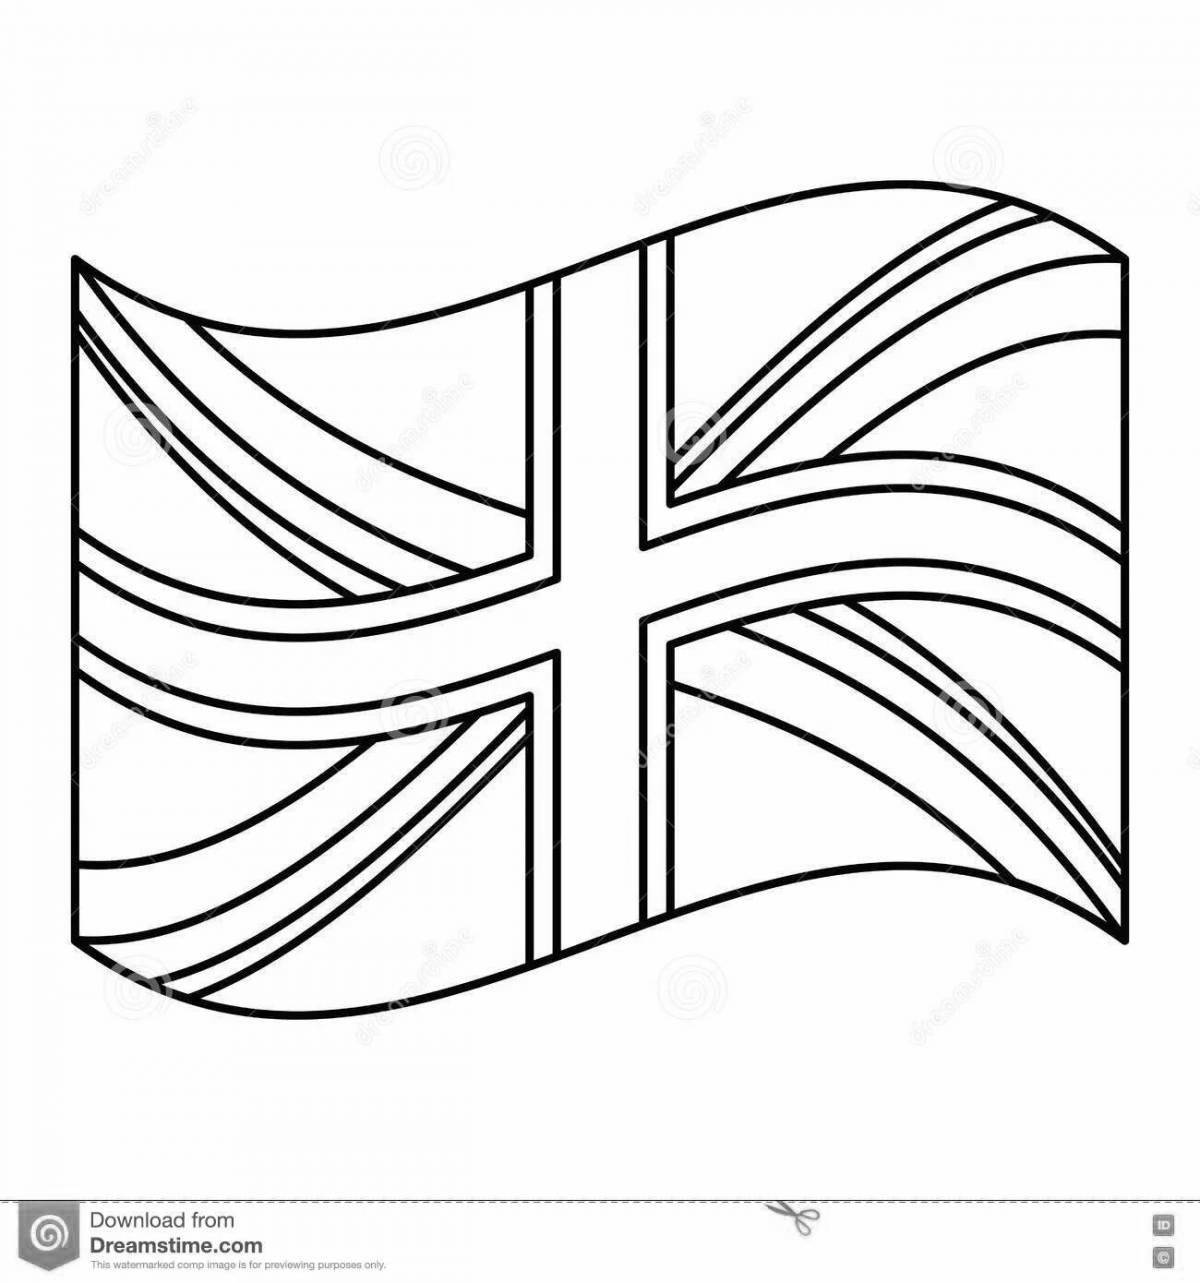 Exquisite british flag coloring book